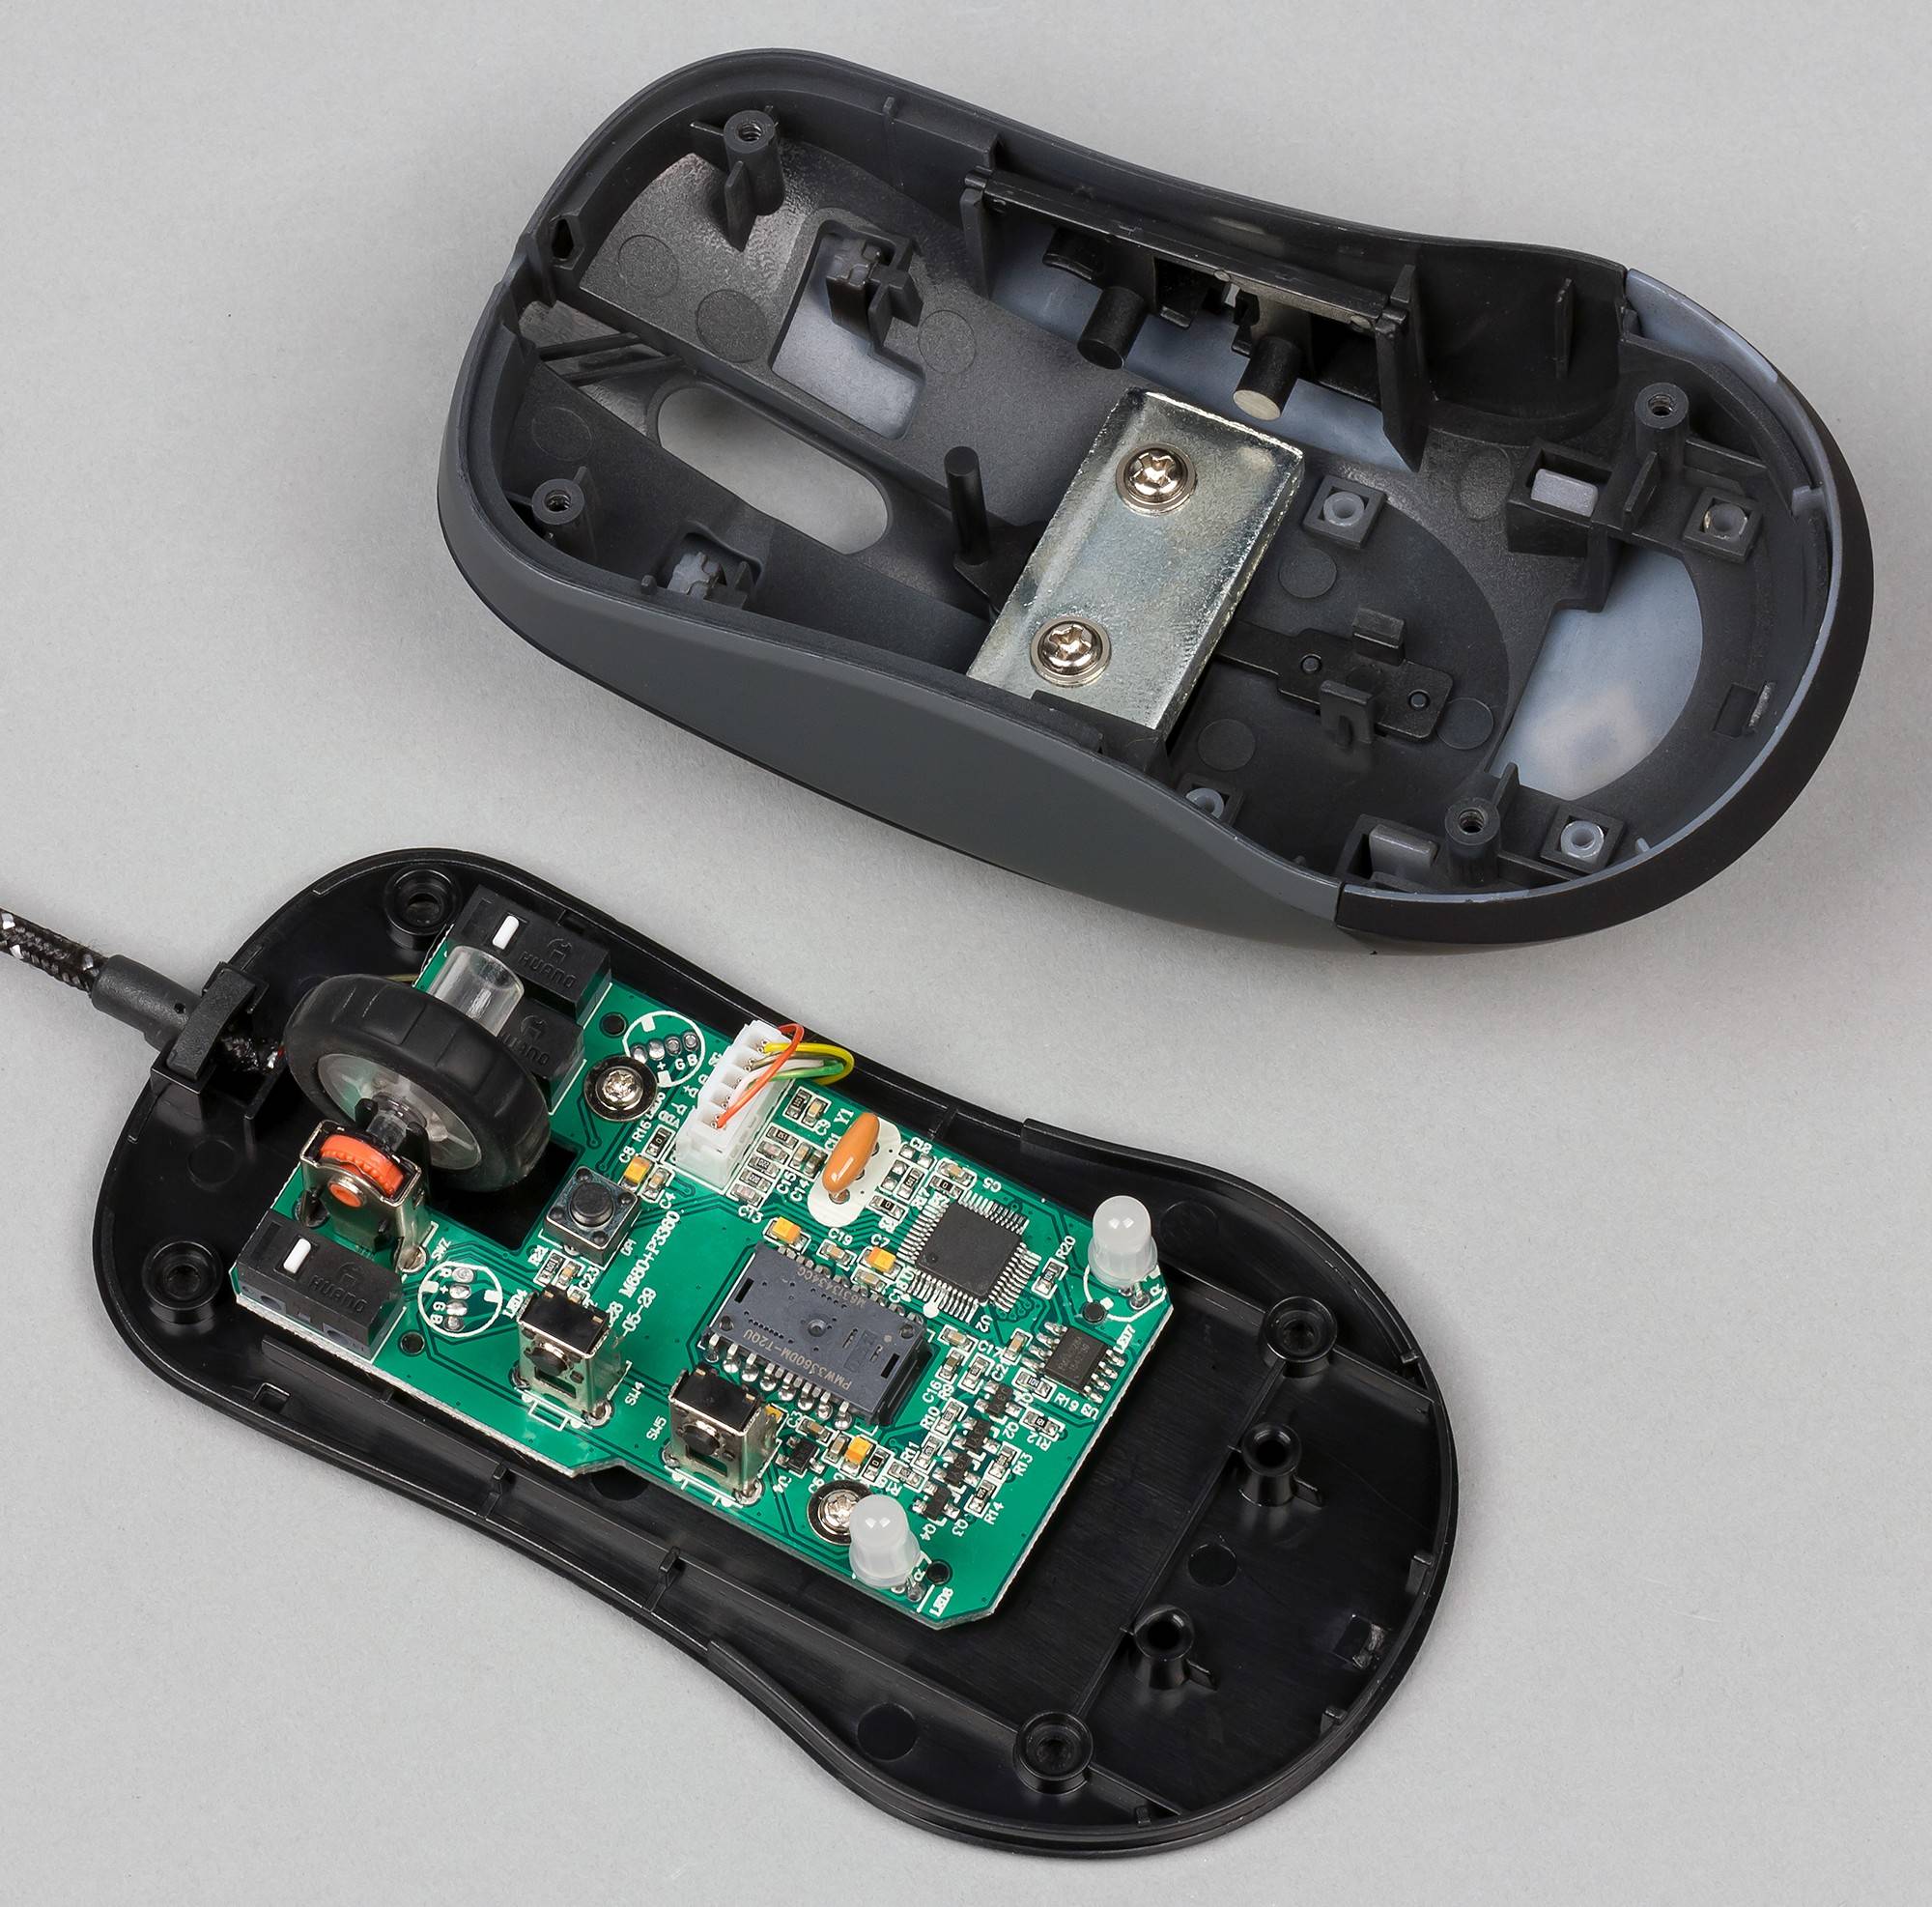 Мышка компьютерная – ремонт своими руками